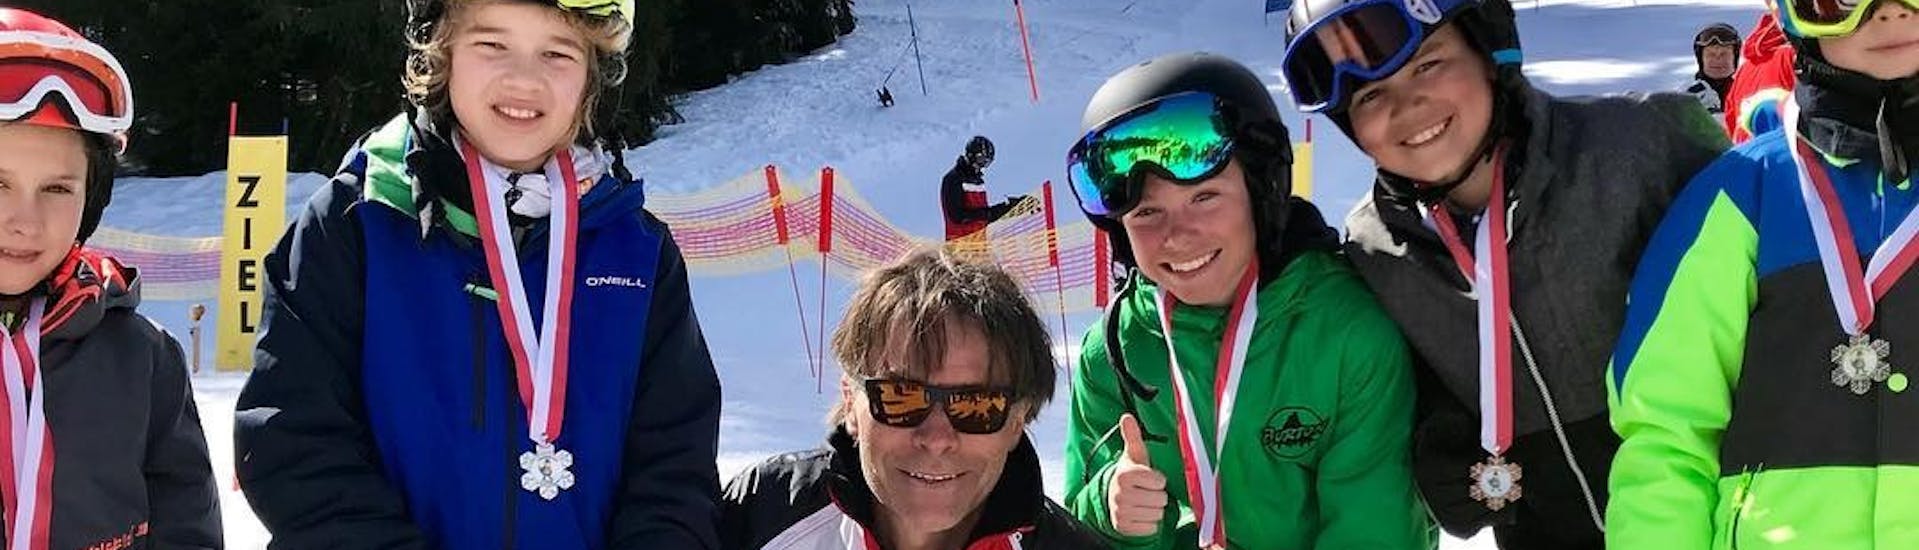 Les enfants avec le moniteur tenant leurs médailles pendant les cours de ski pour enfants pour les skieurs expérimentés avec l'école de ski Nova.